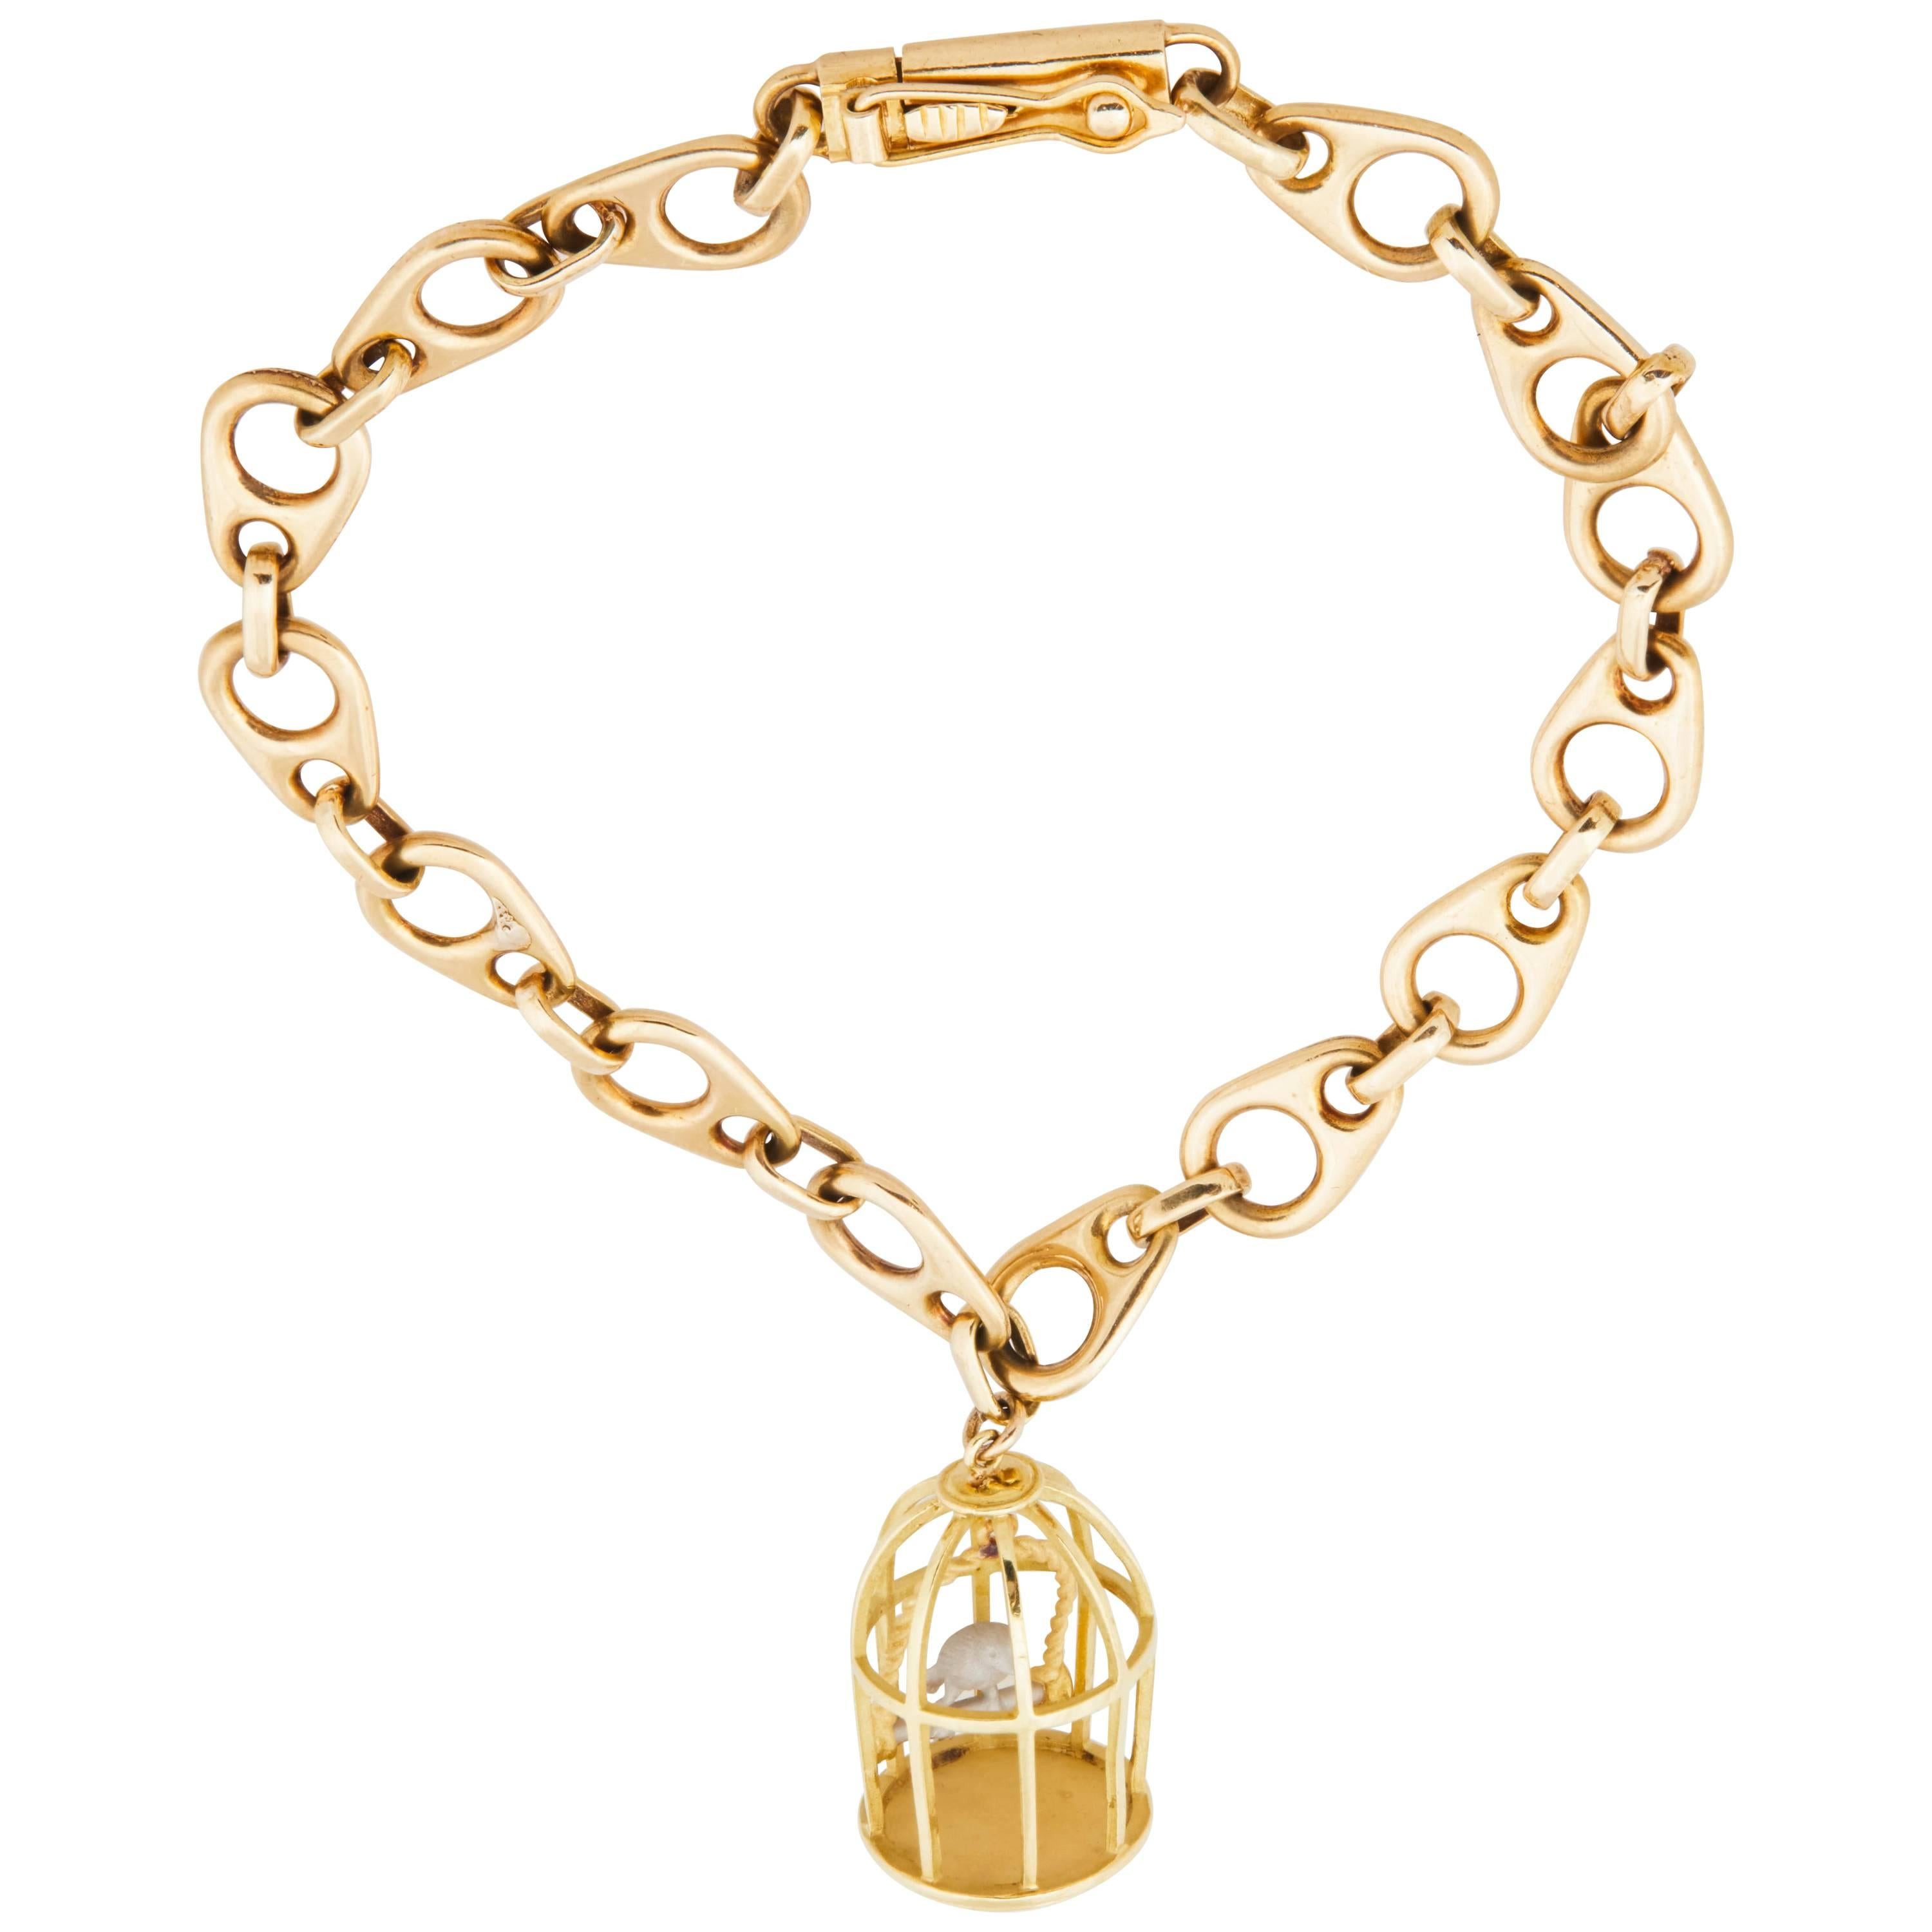 1960s French 18 Karat Gold Link Bracelet with Vintage Gold Birdcage Charm